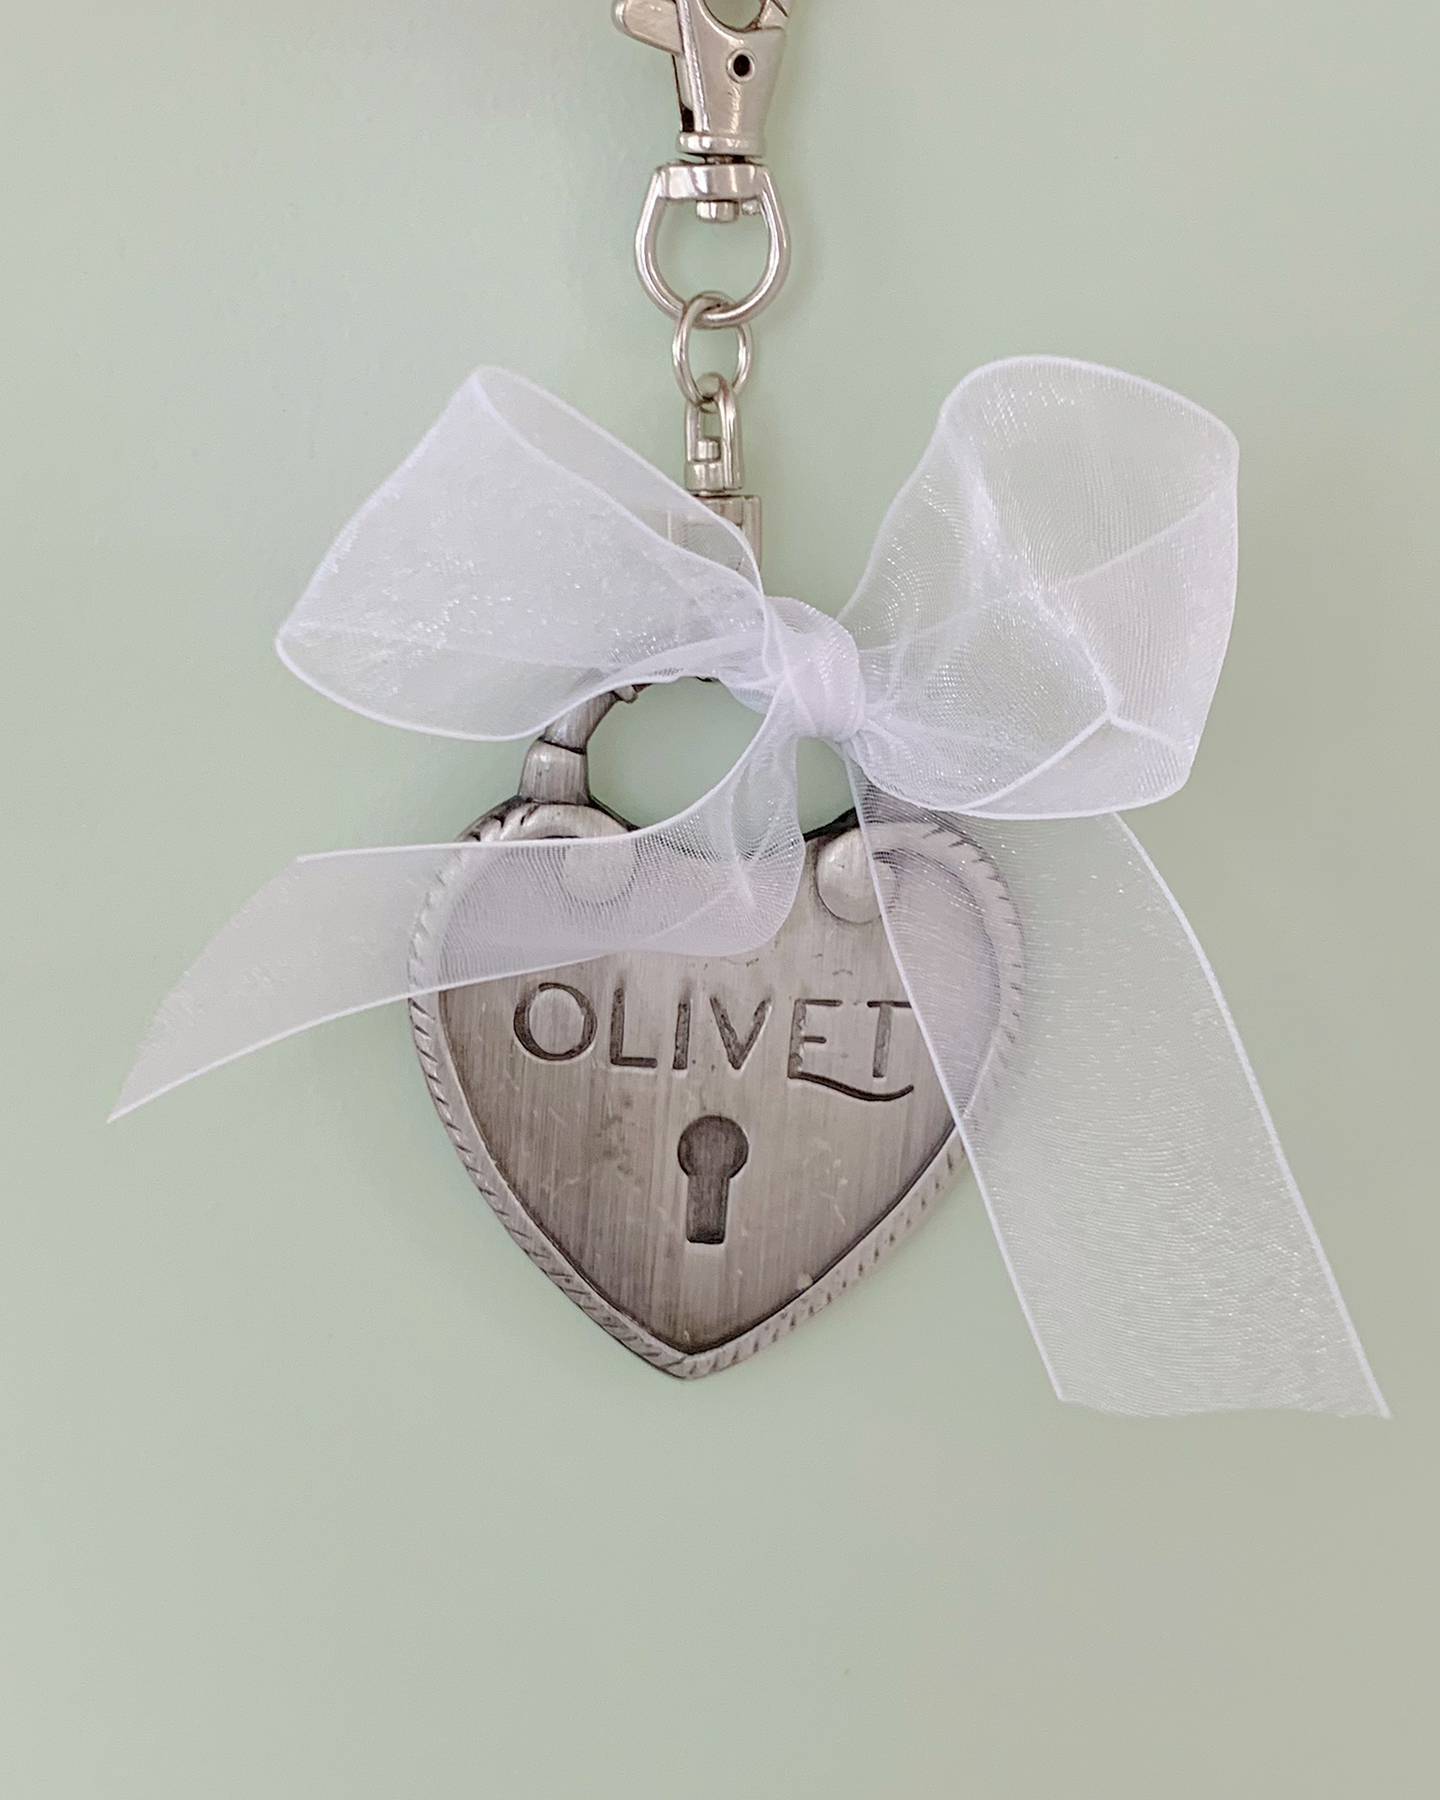 Olivet heart bag-charm